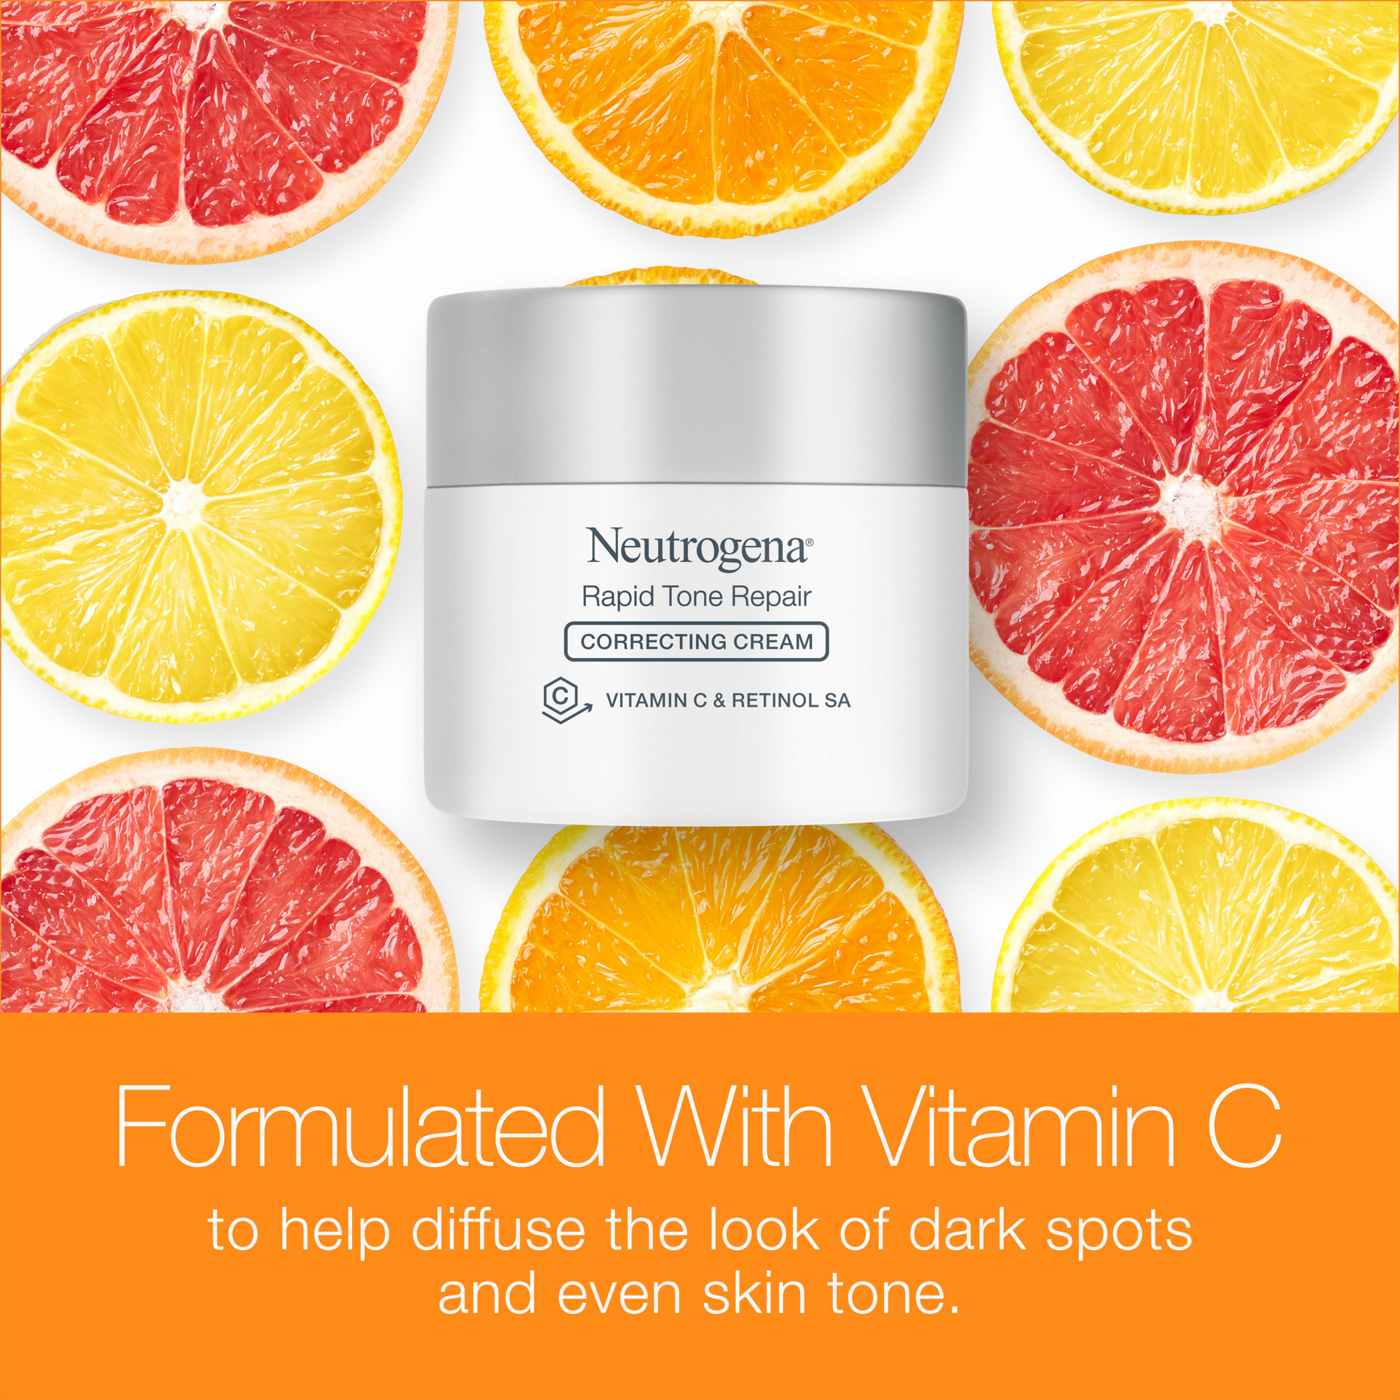 Neutrogena Rapid Tone Repair Retinol + Vitamin C Correcting Cream; image 4 of 8